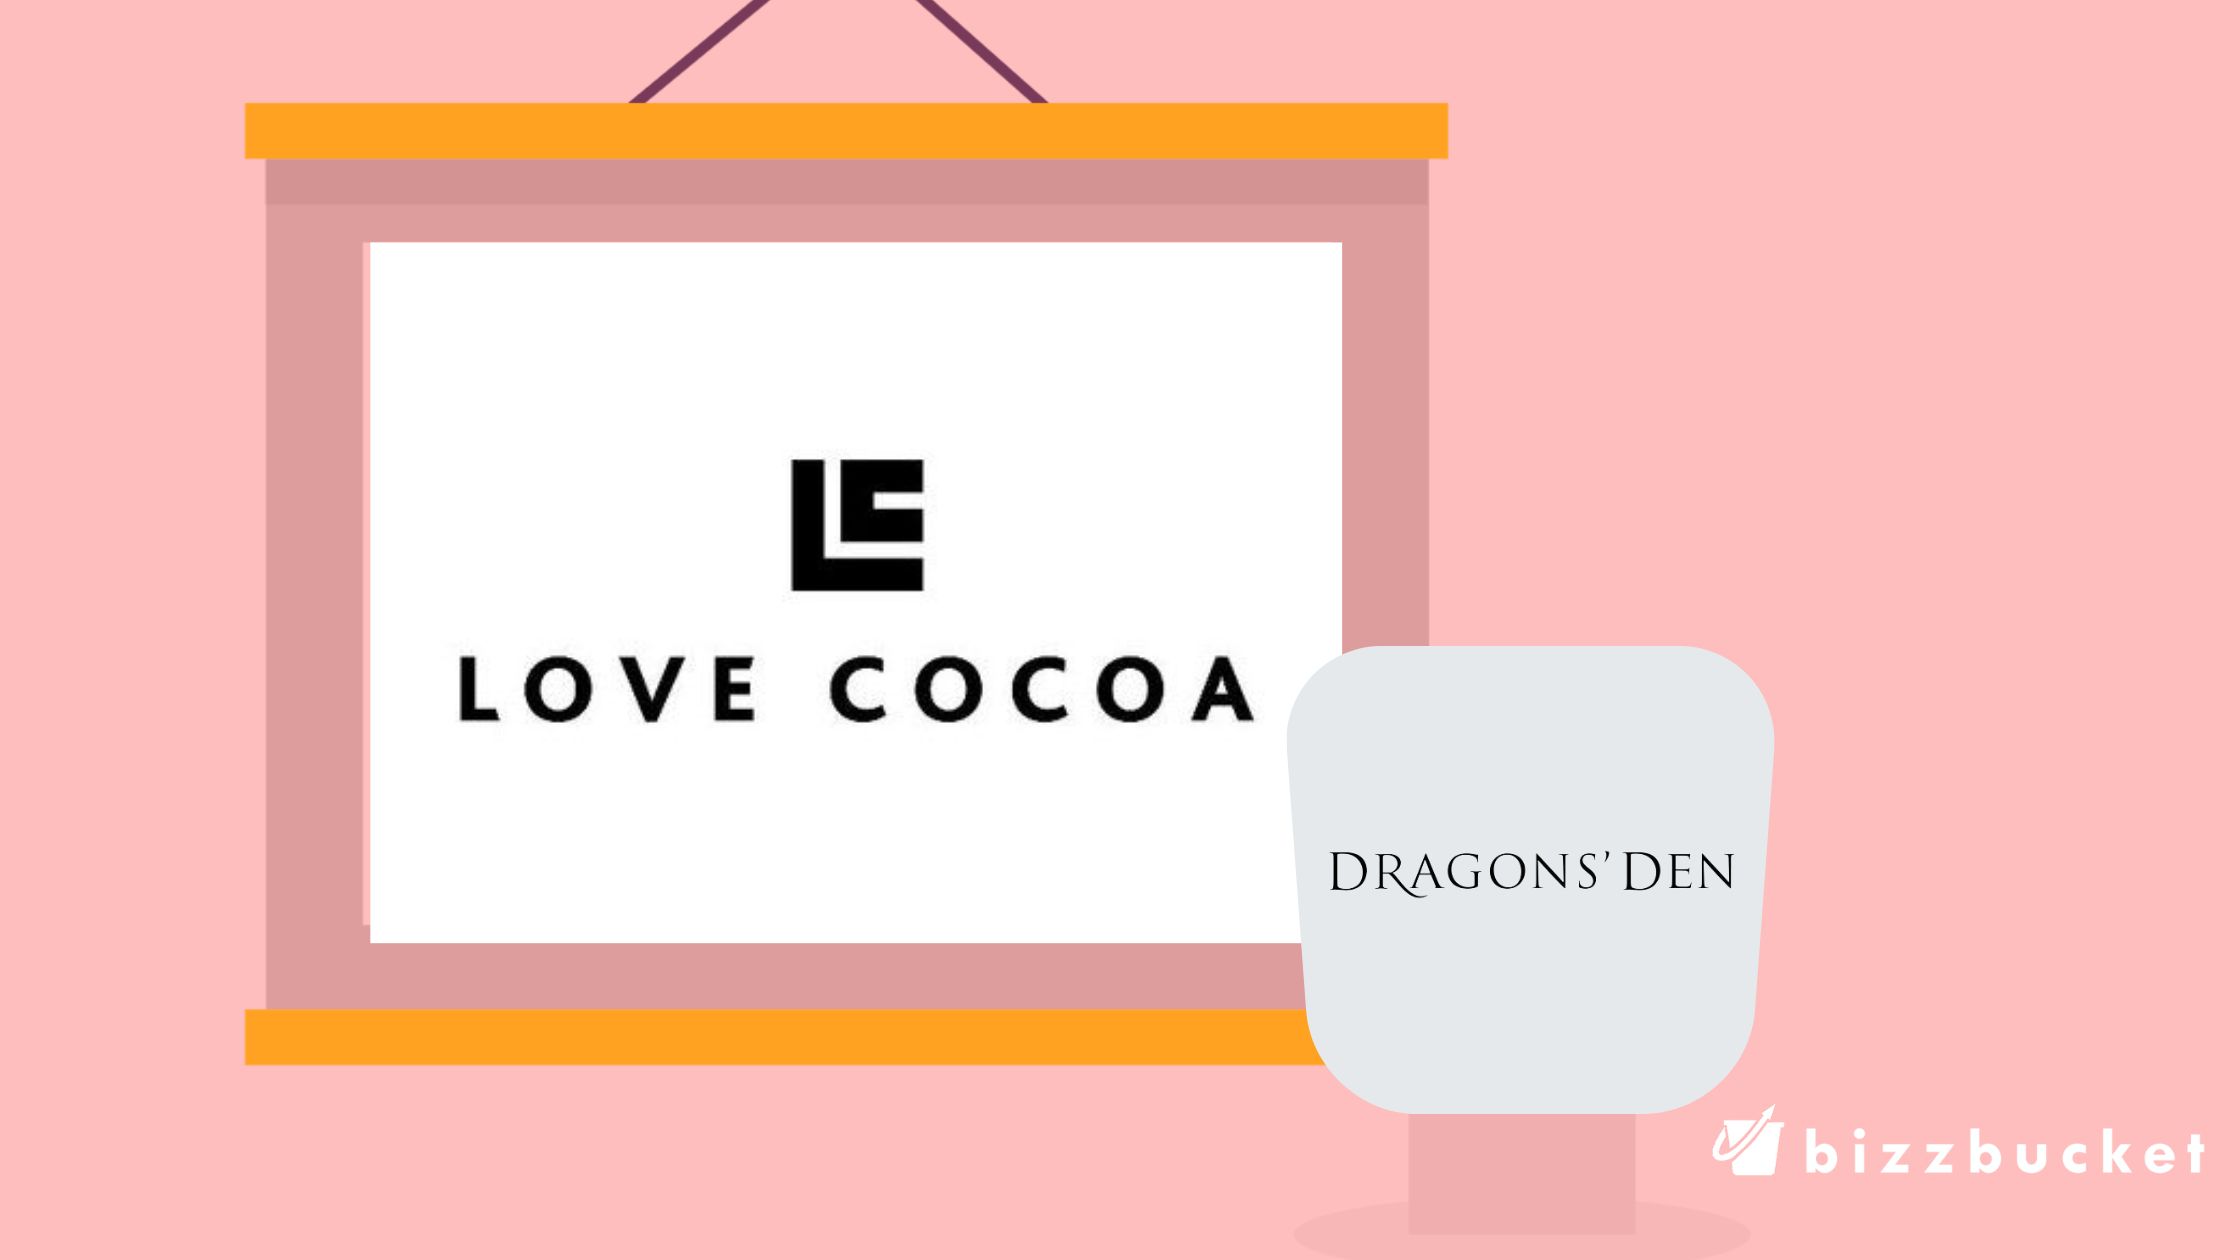 Love Cocoa Dragons' Den Update